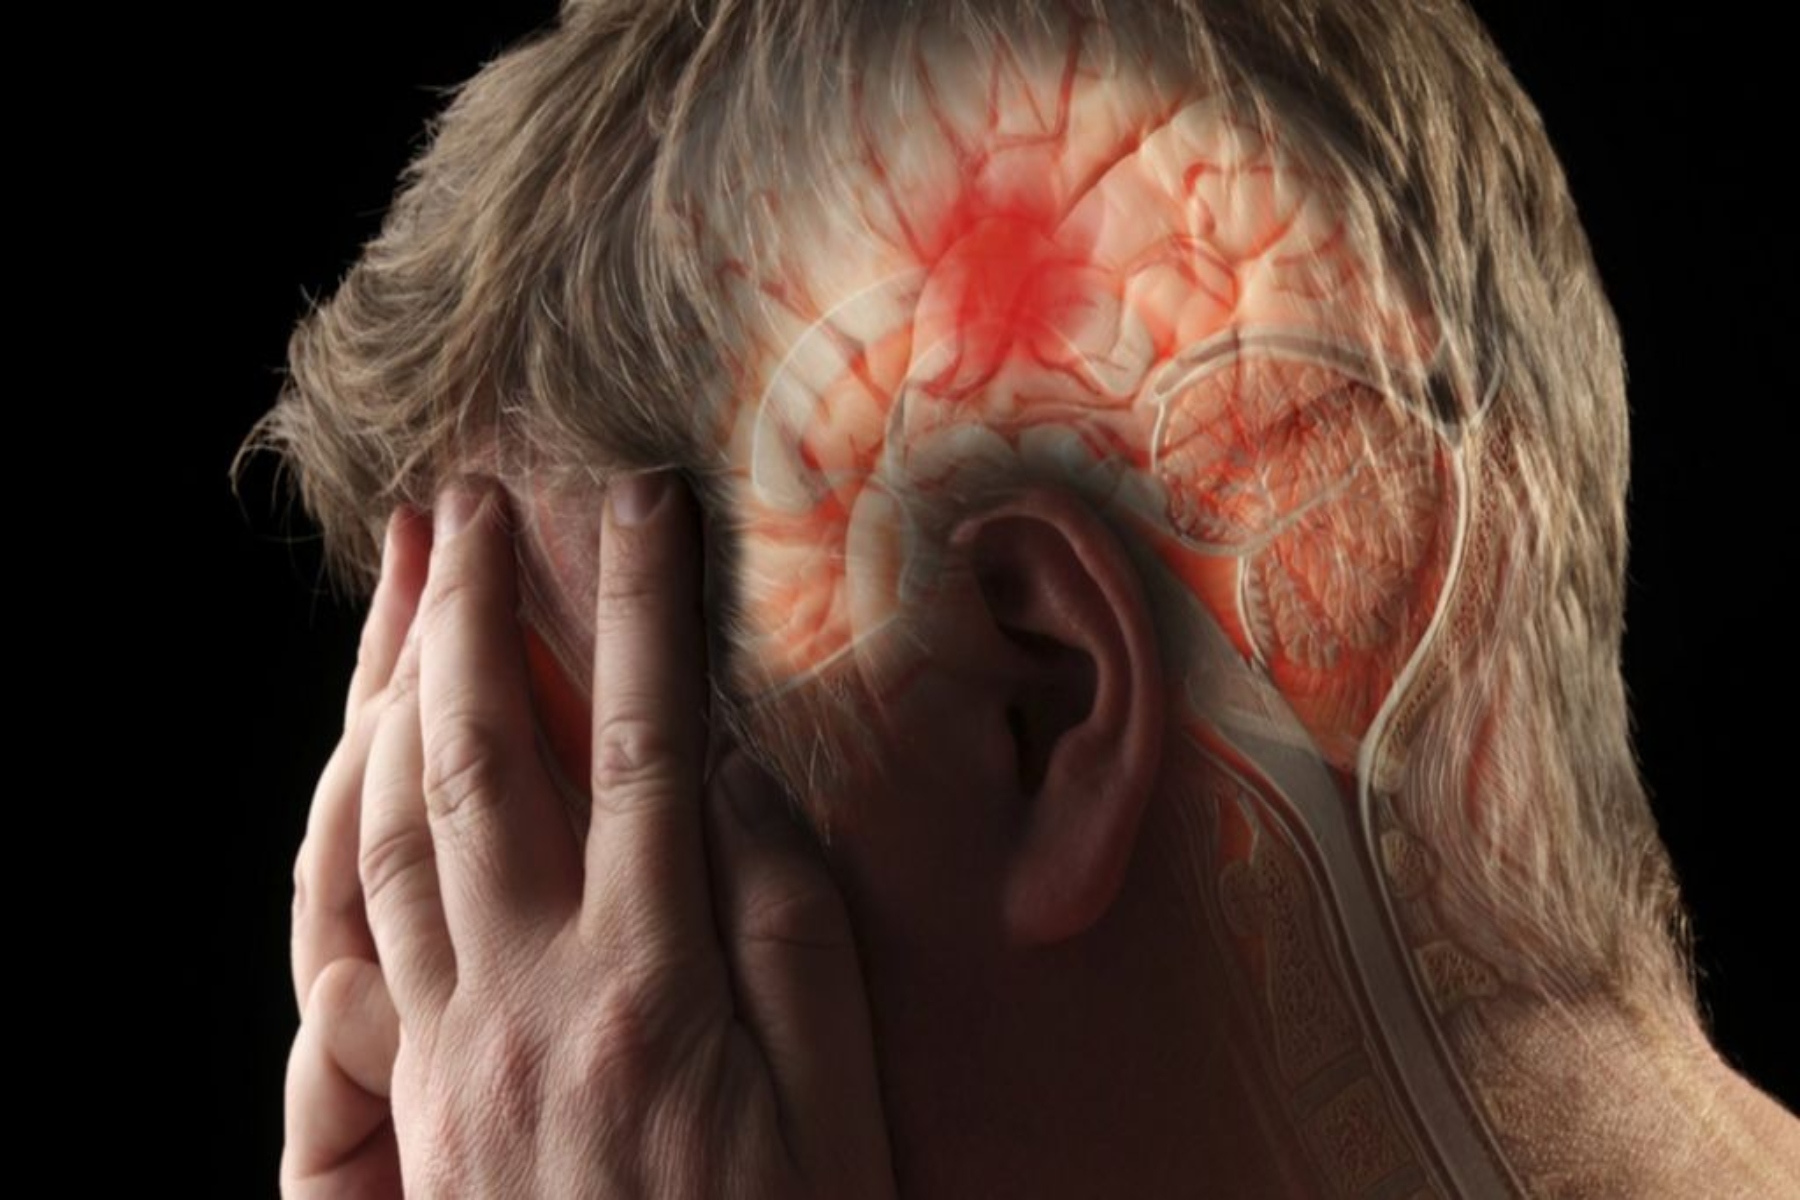 Εγκεφαλικό πίεση: Χαμηλή αρτηριακή πίεση οδηγεί σε αυξημένο κίνδυνο θανάτου μετά από εγκεφαλικό